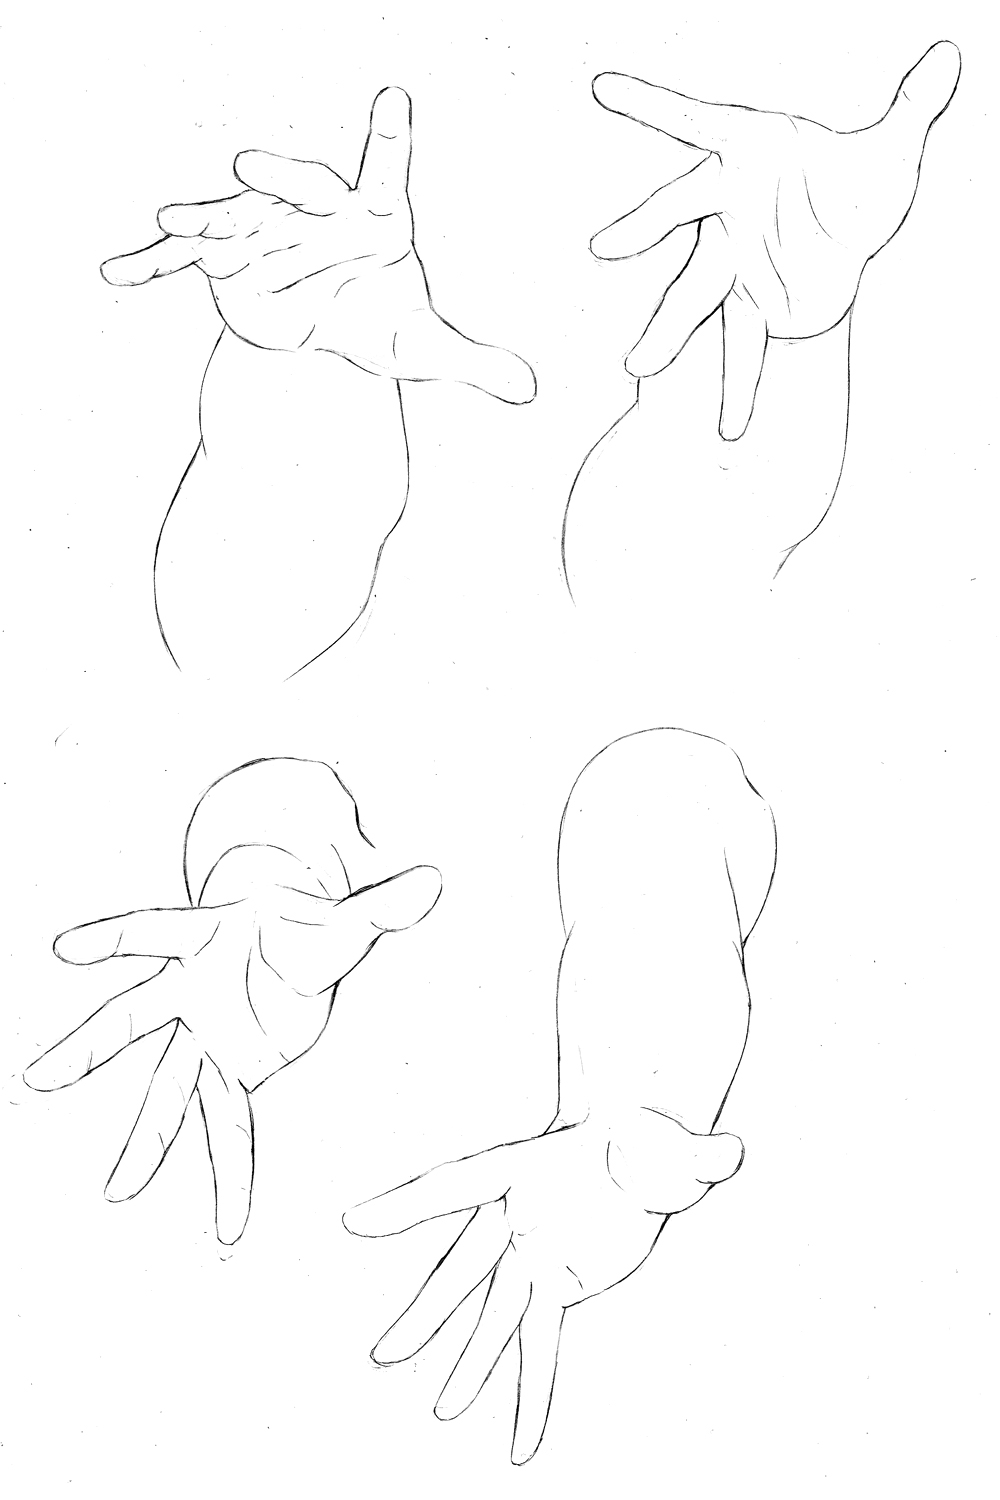 お絵描き練習記録 手足の描き方 その9 いろいろな手の練習